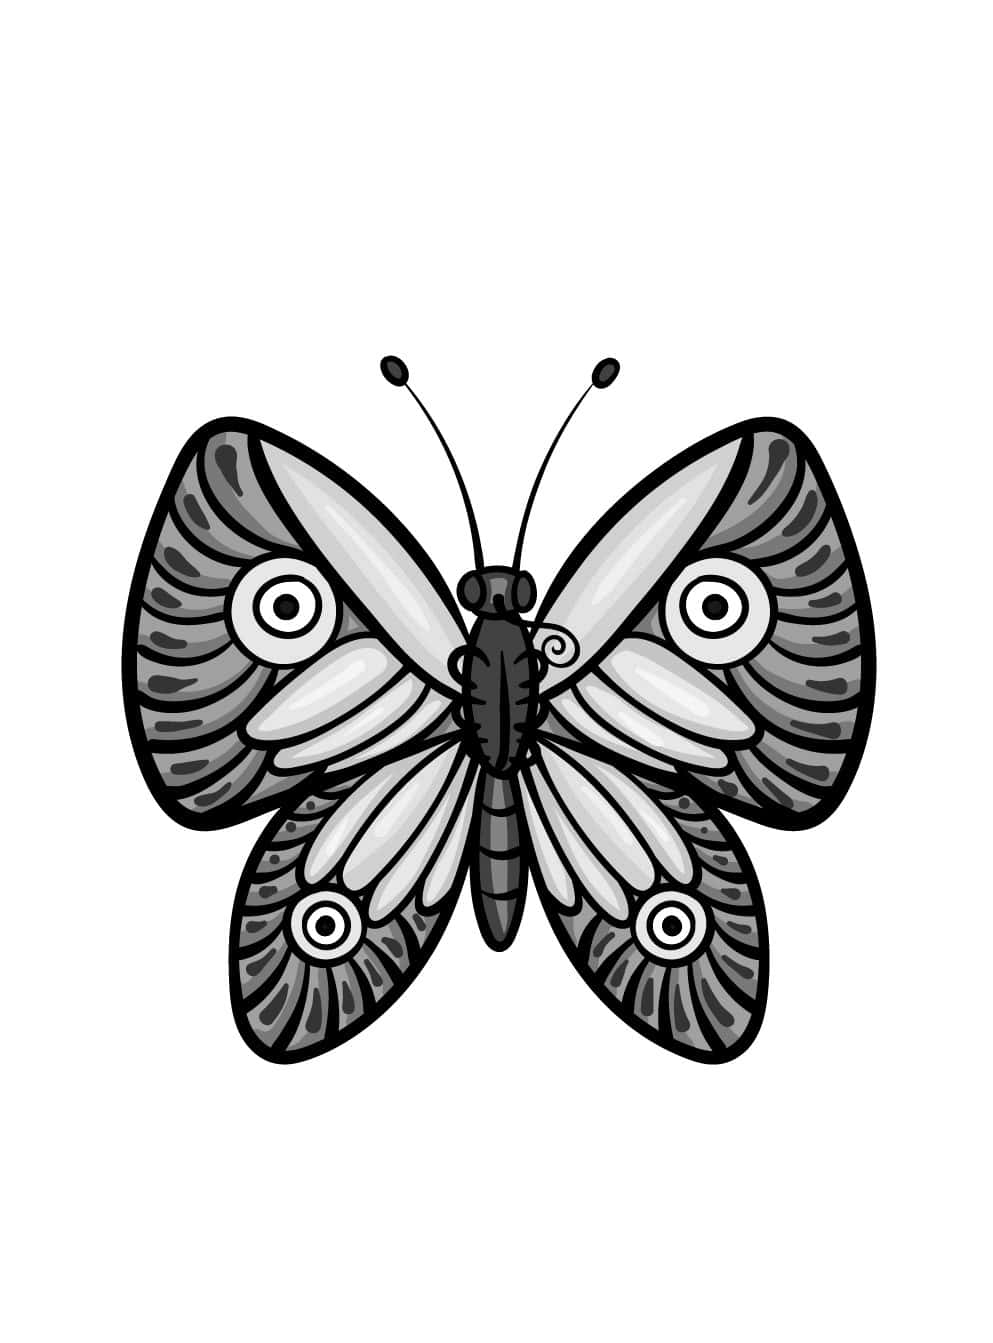 Disegnaimmagini Di Schizzi Di Farfalle Facili